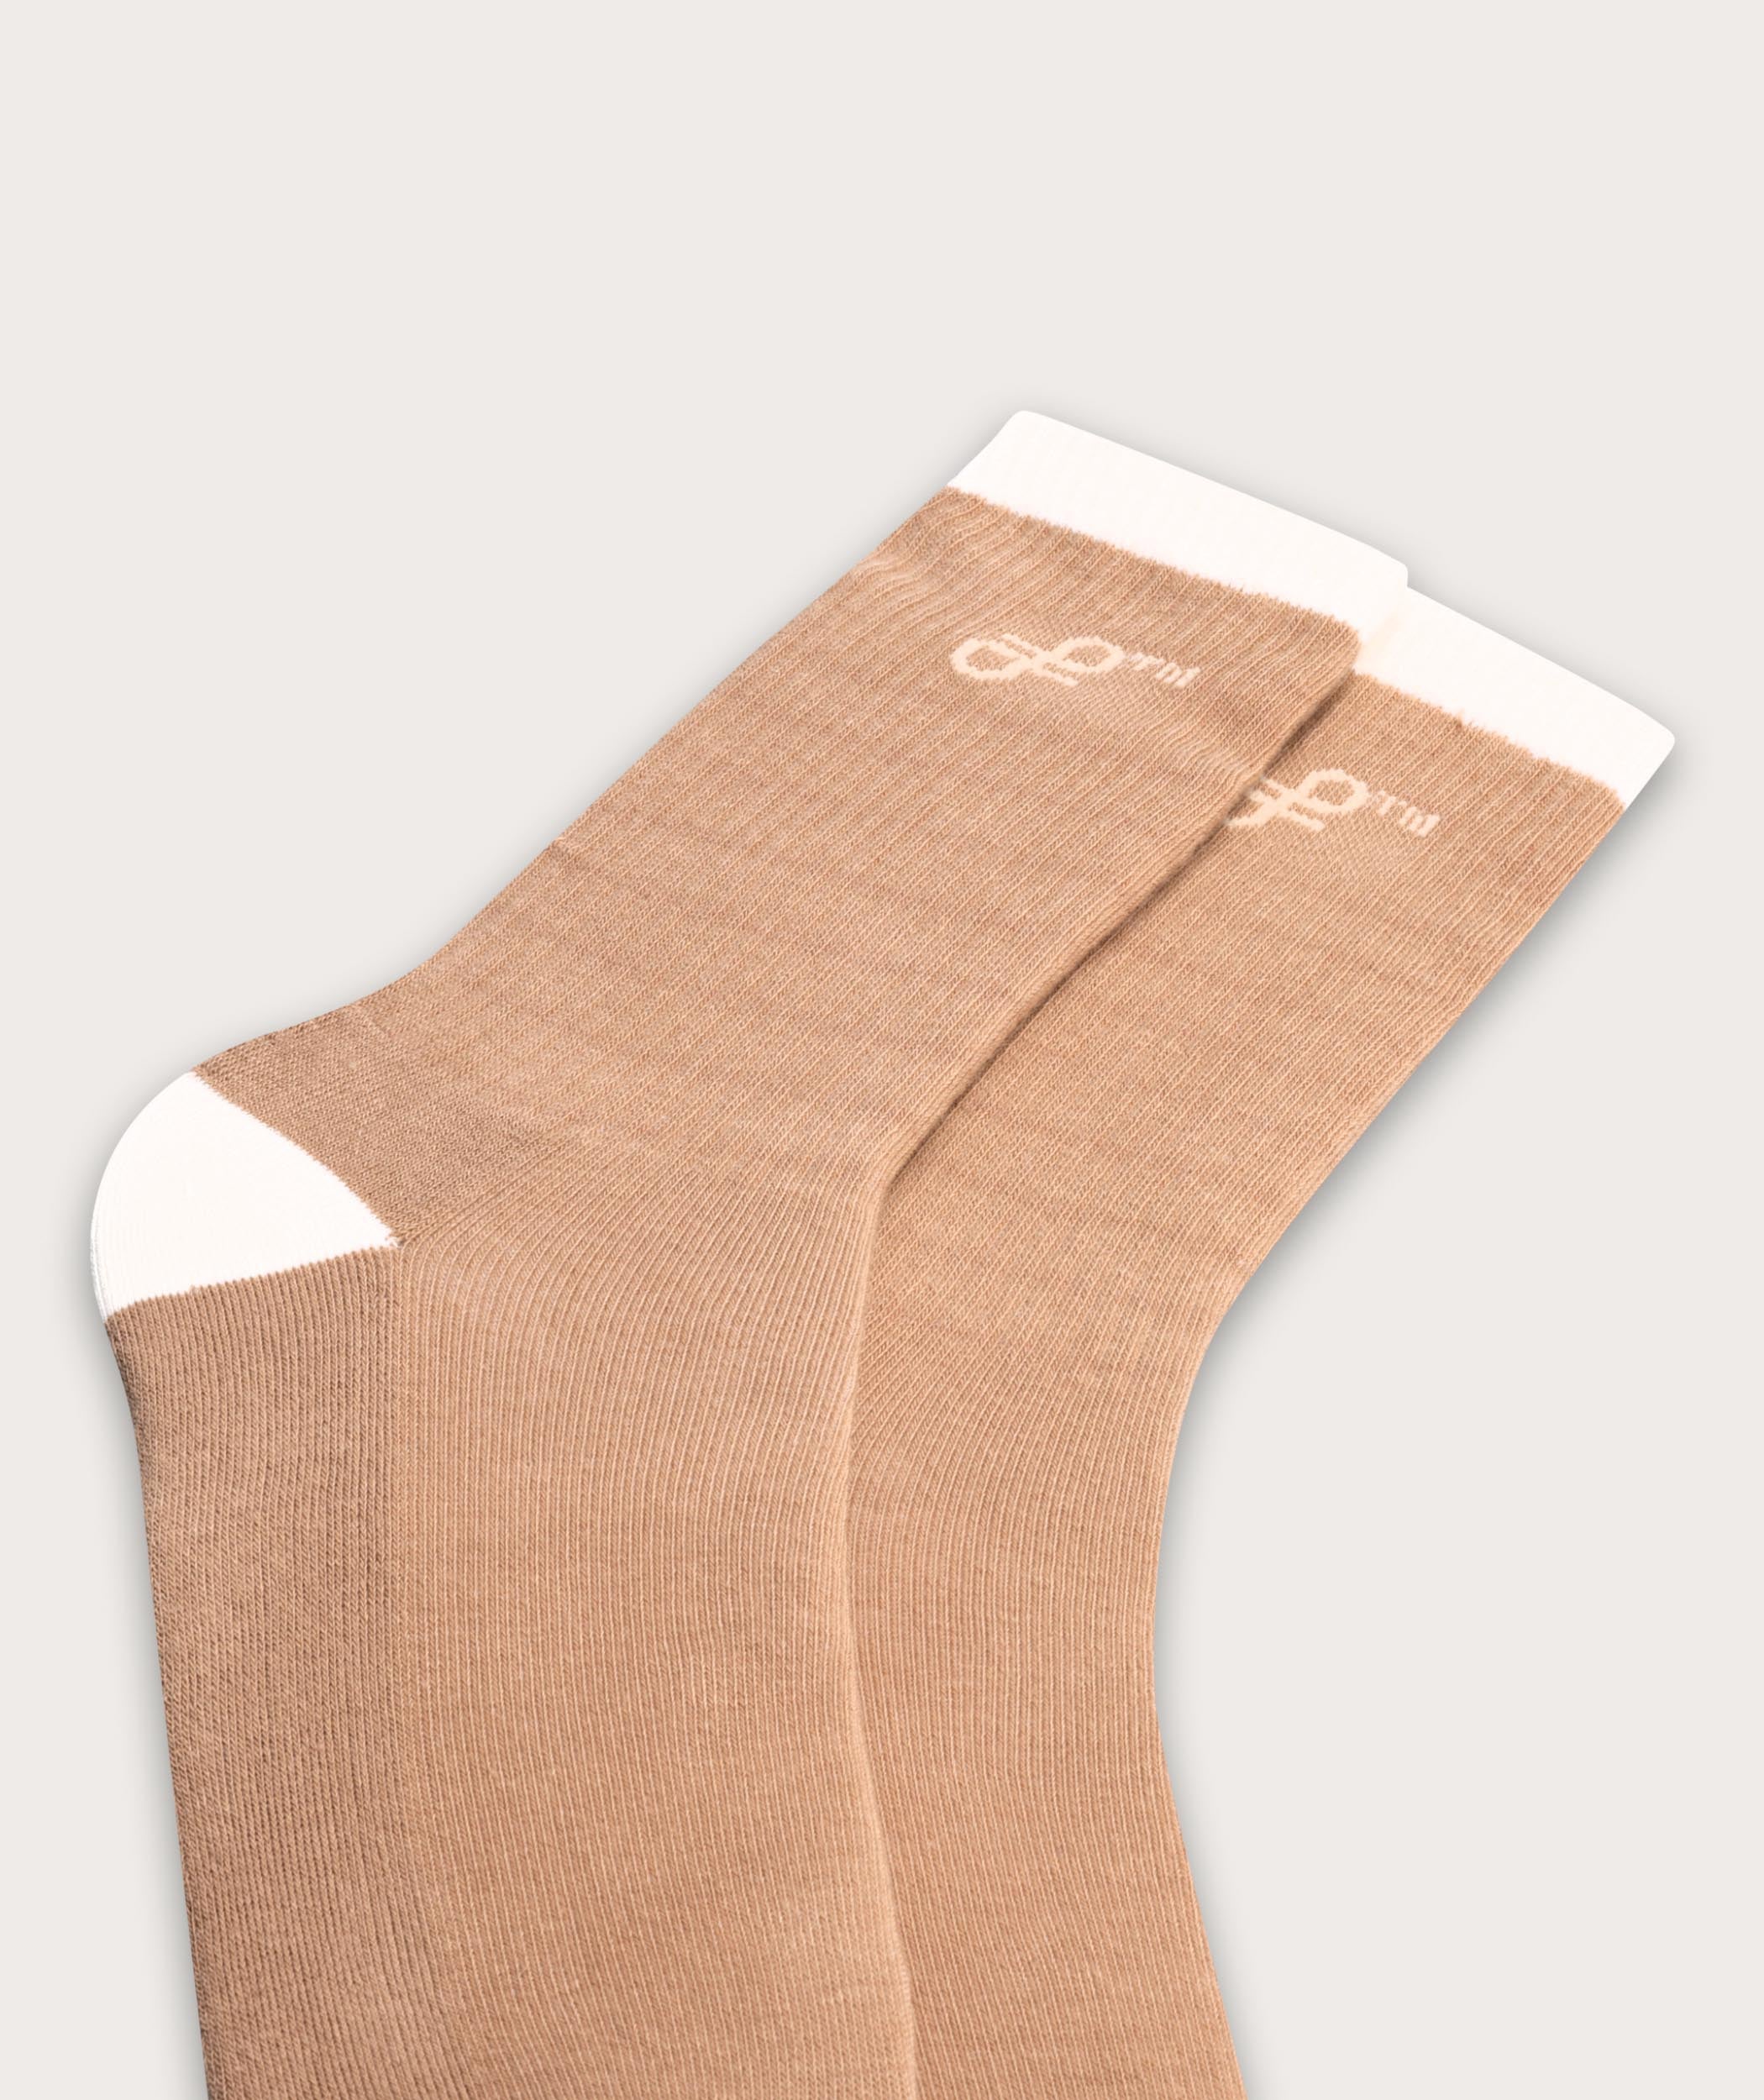 Socks FOM Crew - Beige/ Mustard (Size 4-7)